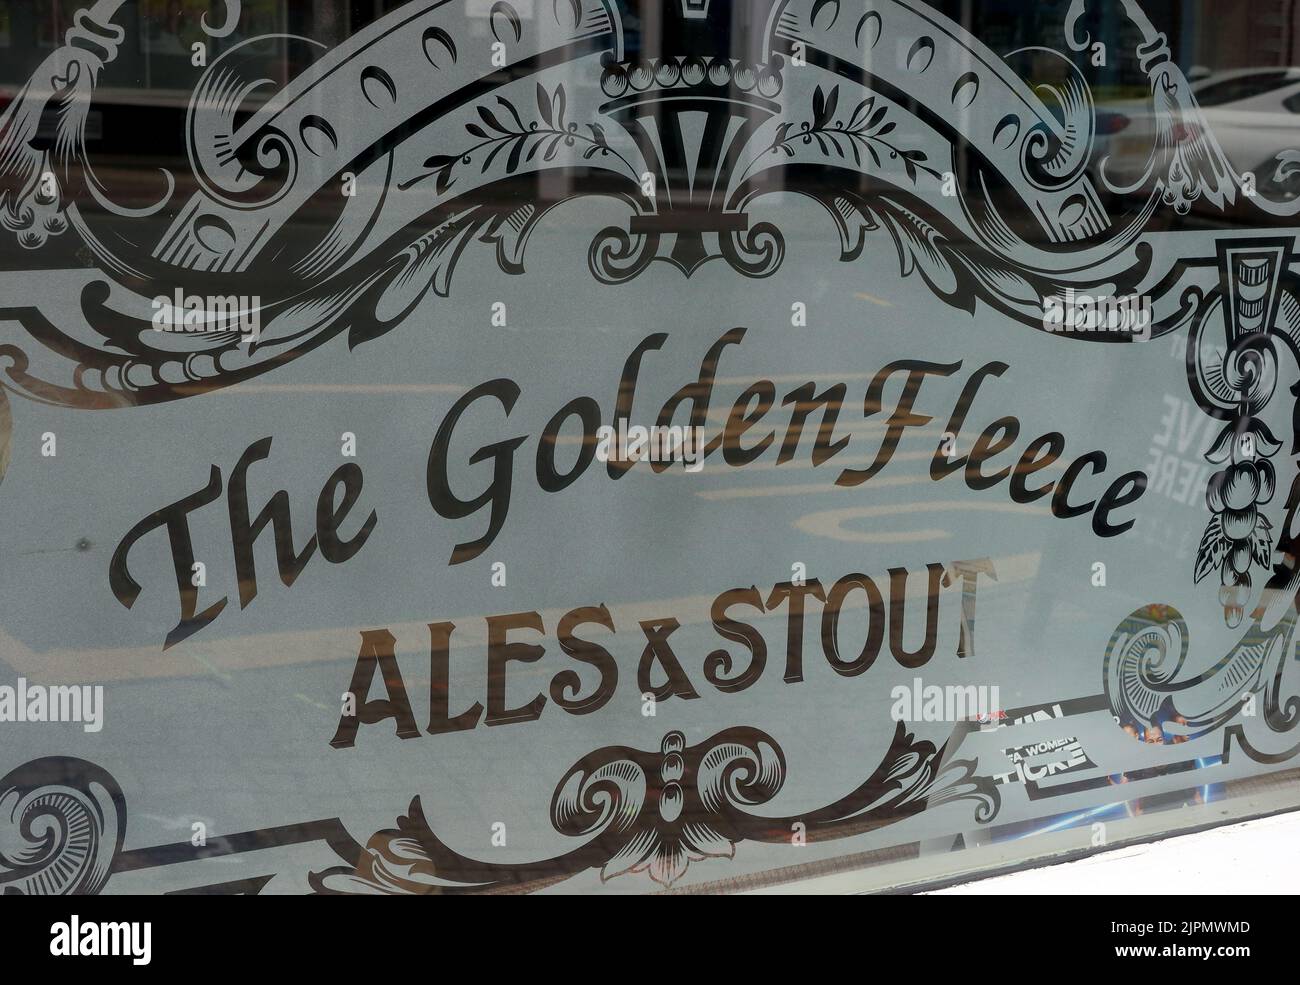 Fenêtre de pub en verre gravé - The Golden Fleece, Ales & Stout, 1 St Owen's St, Hereford, Herefordshire, Angleterre, Royaume-Uni, HR1 2JB Banque D'Images